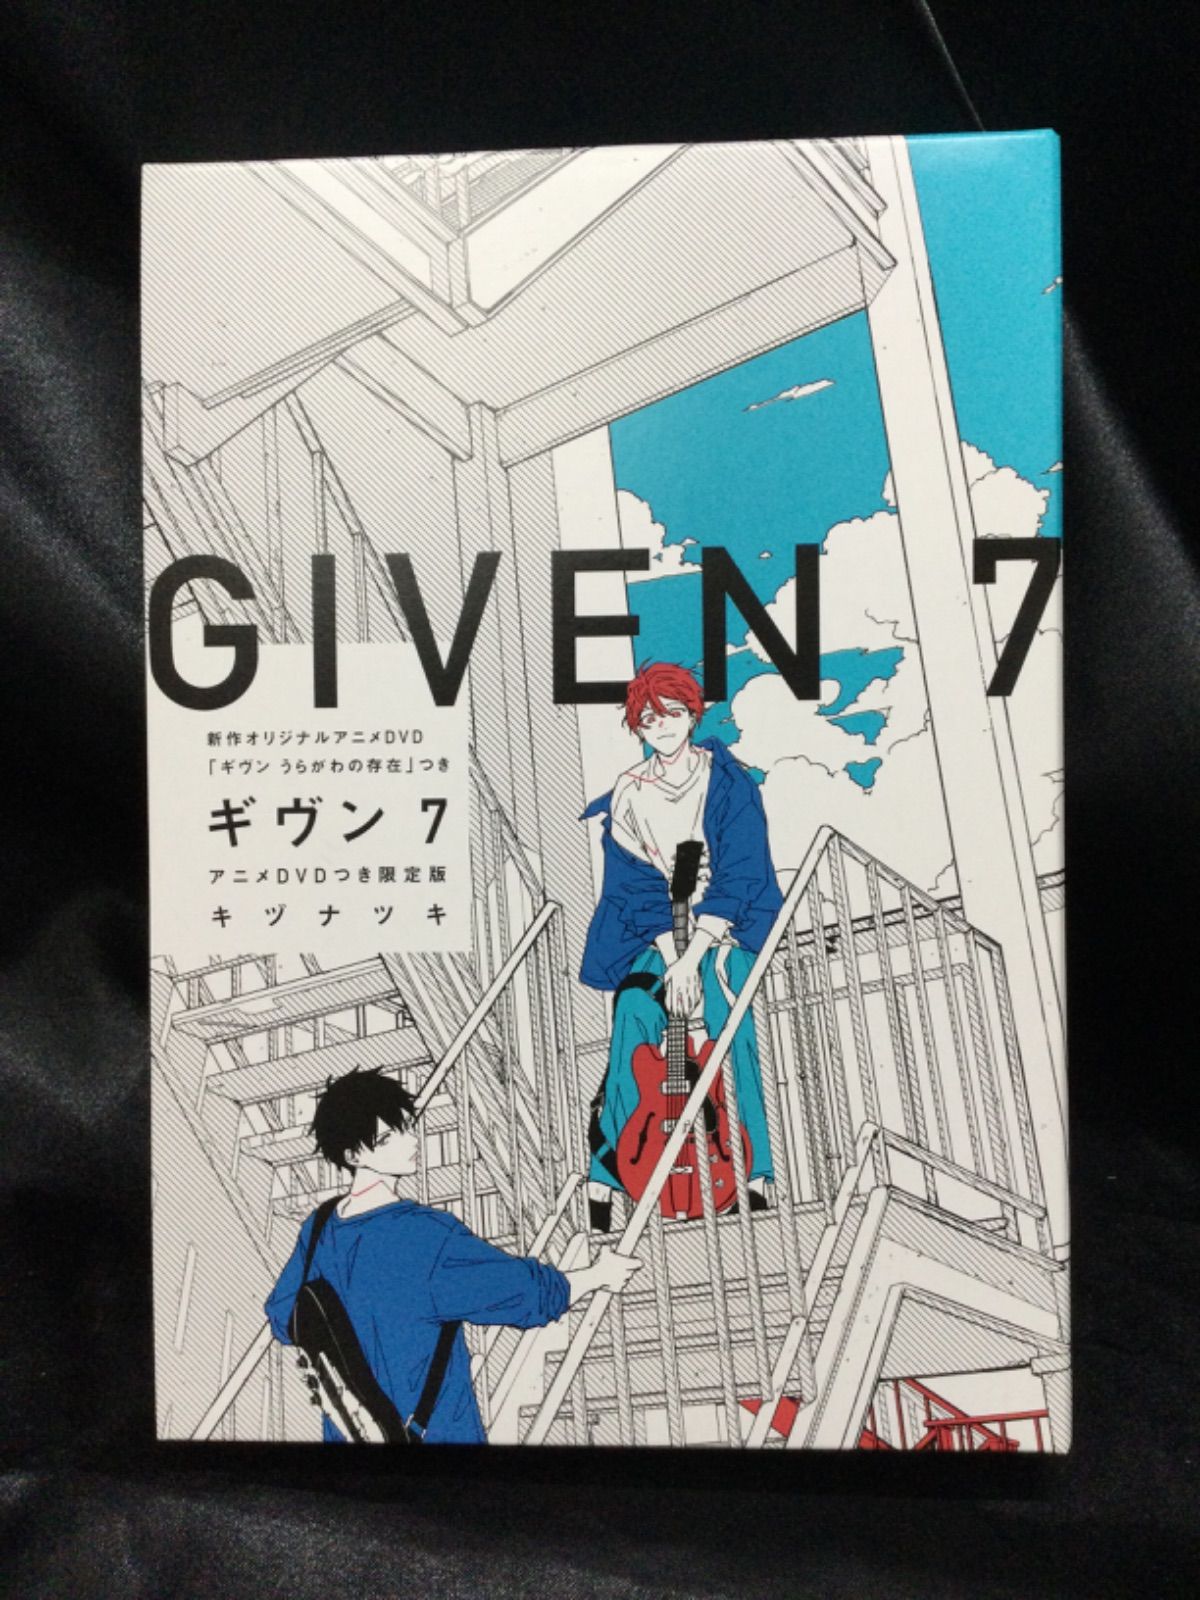 ☆ギヴン7 アニメDVD付 限定版 キヅナツキ - ののくる - メルカリ